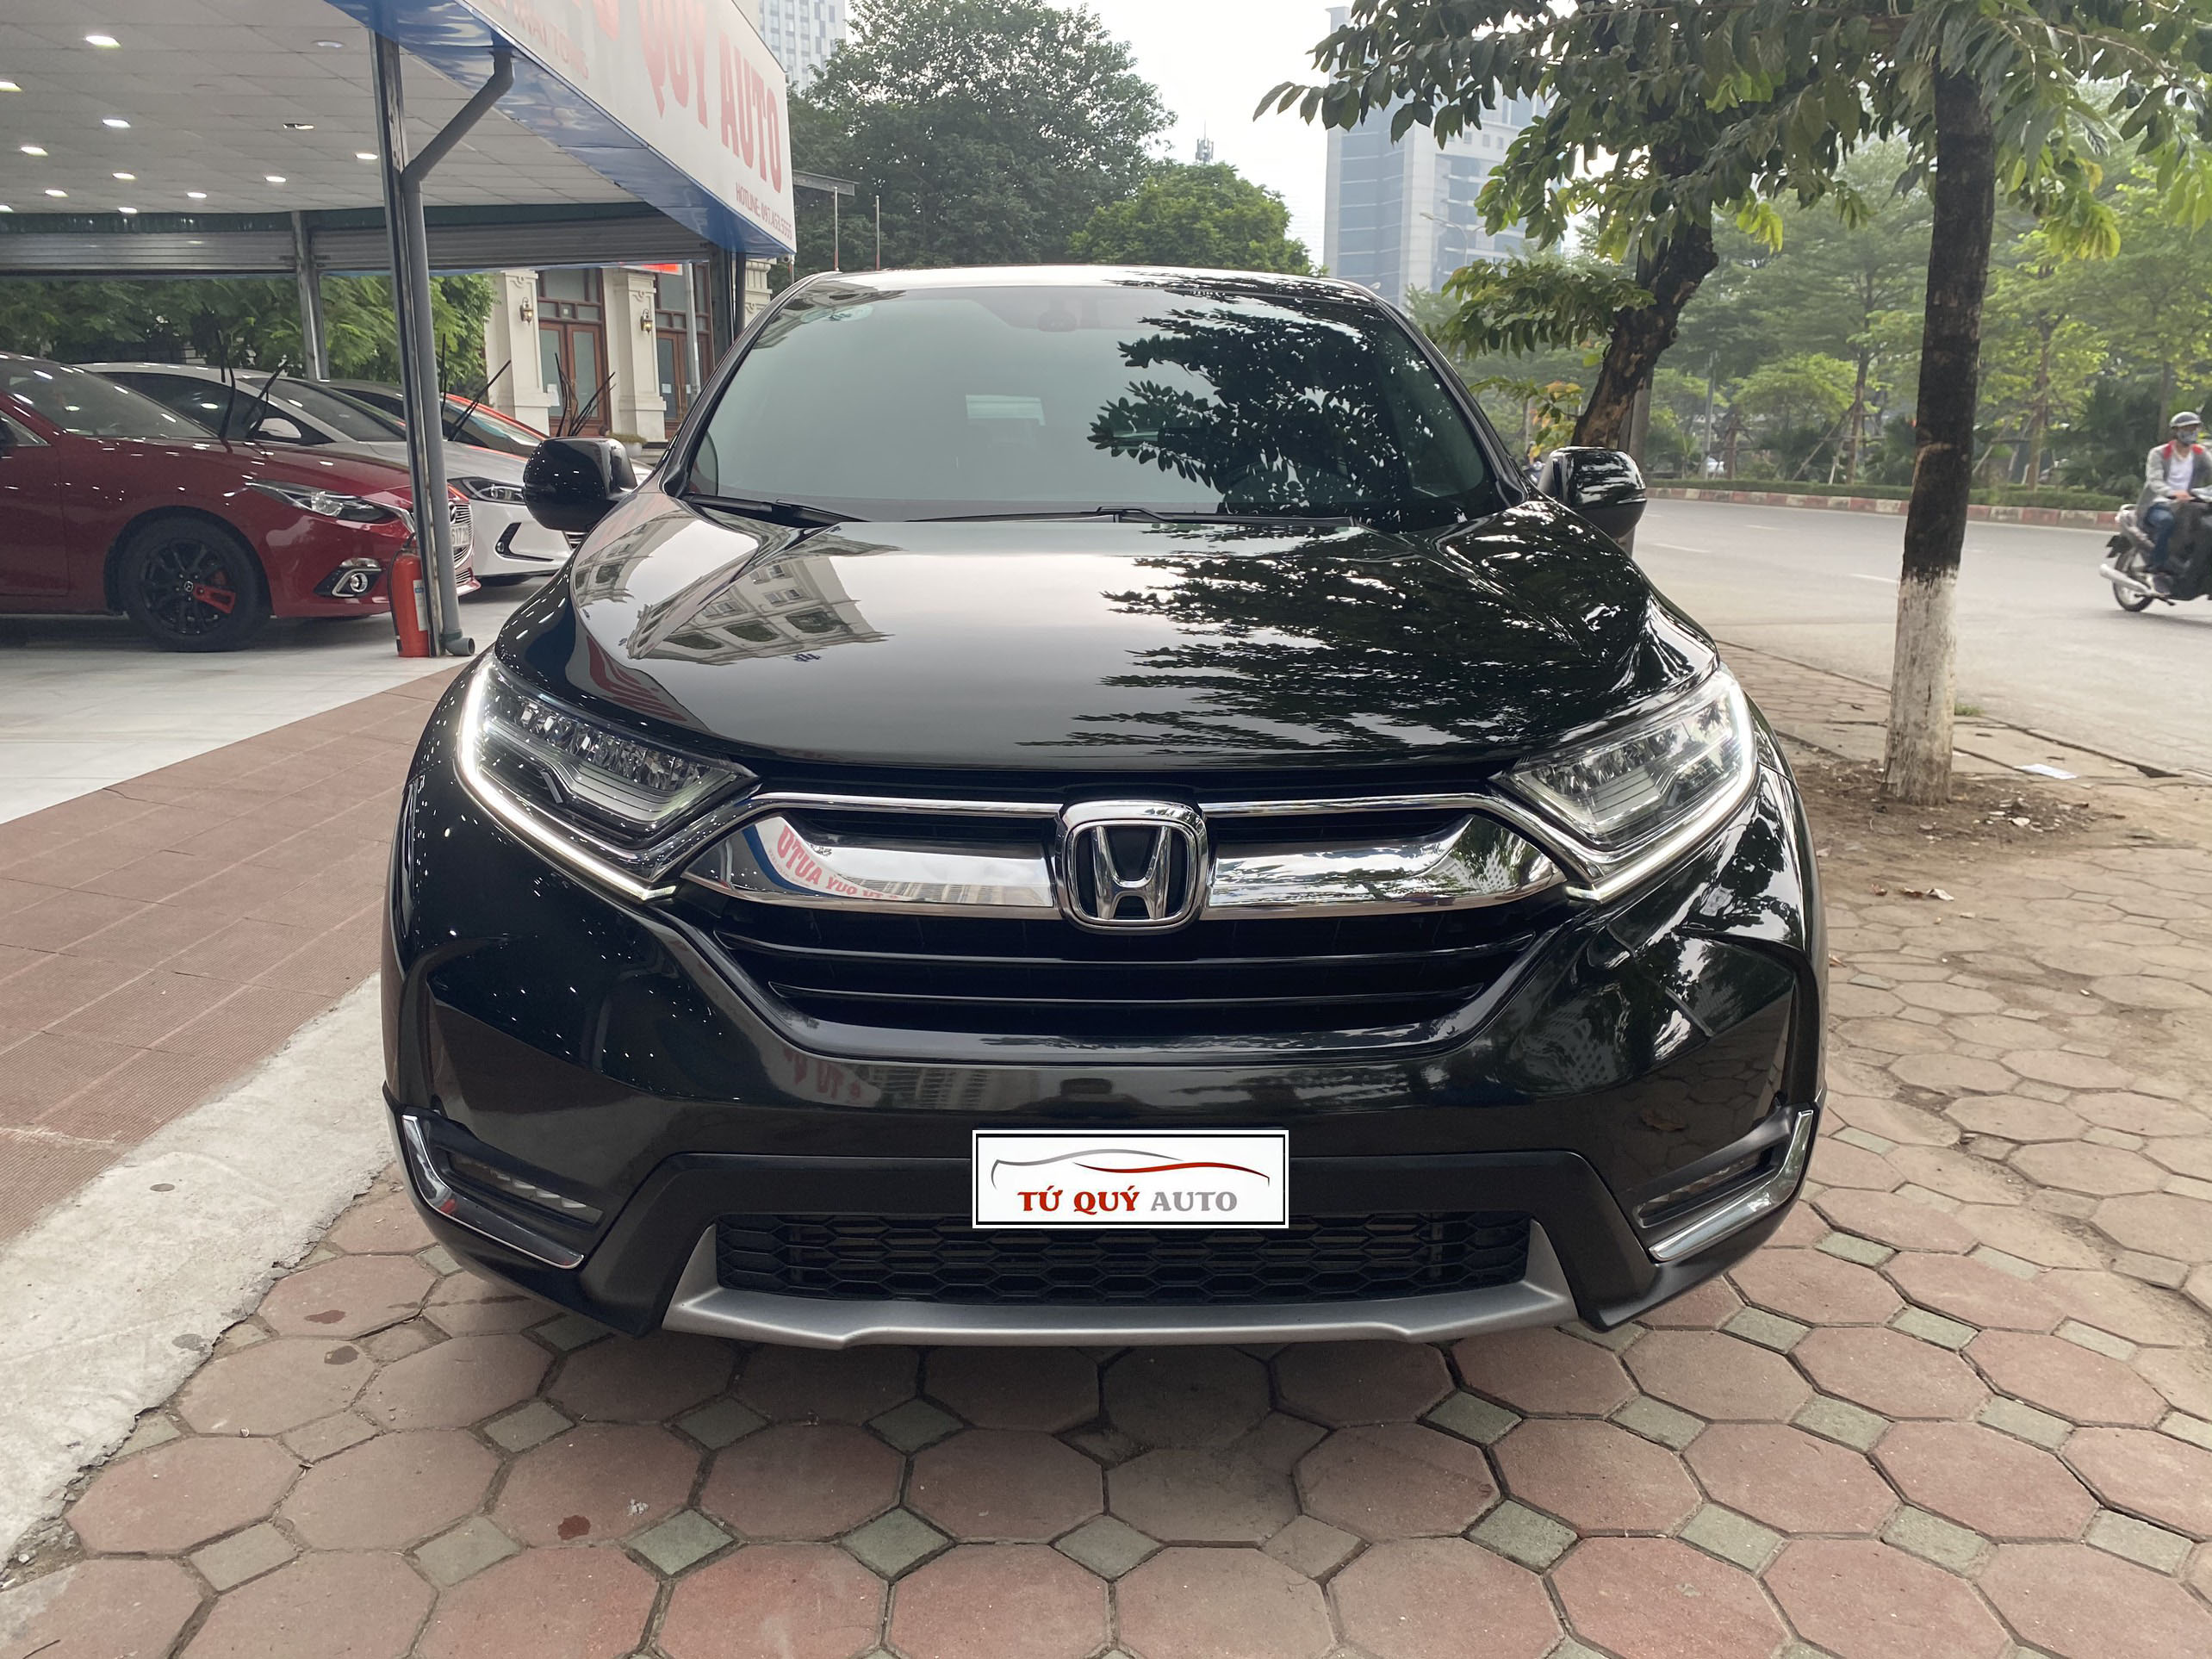 Xe Honda CRV 1.5L Turbo 2018 - Xanh Đen